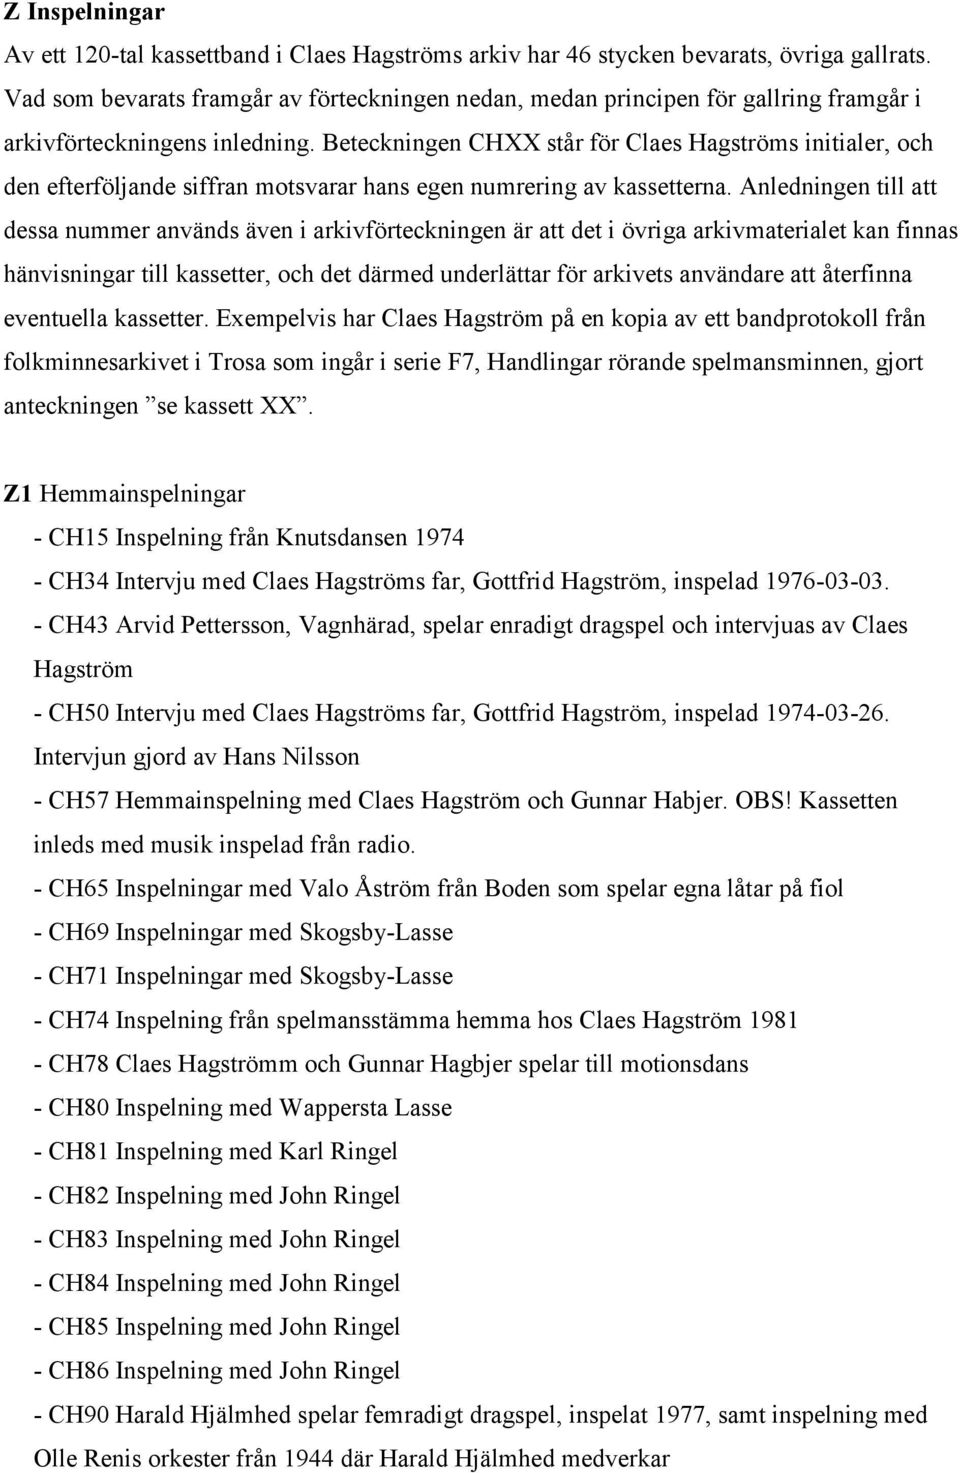 Beteckningen CHXX står för Claes Hagströms initialer, och den efterföljande siffran motsvarar hans egen numrering av kassetterna.